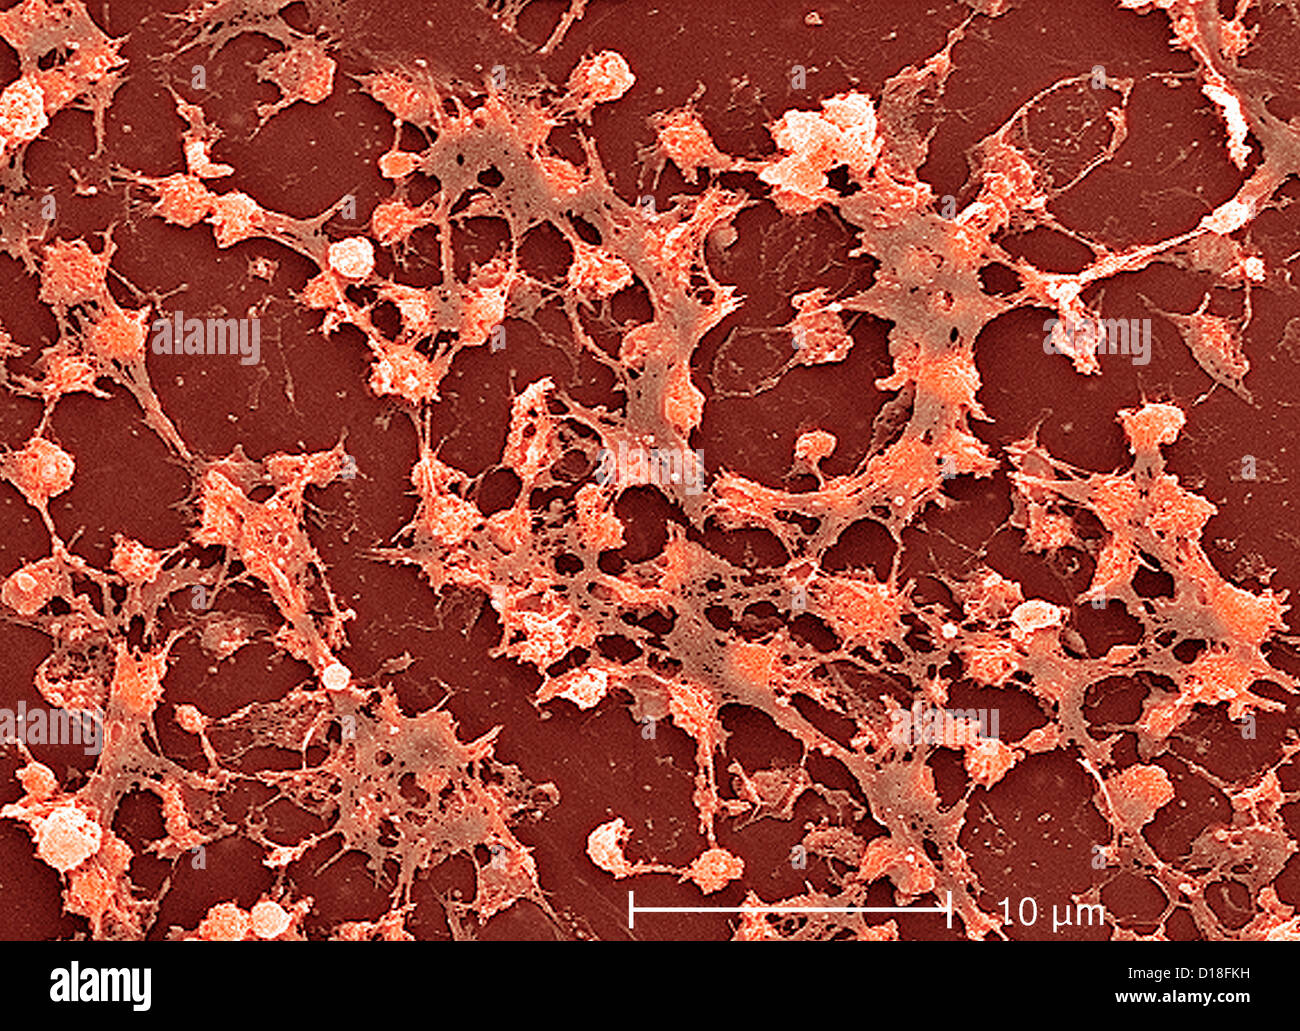 Micrografía de electrones de Staphylococcus aureus Foto de stock